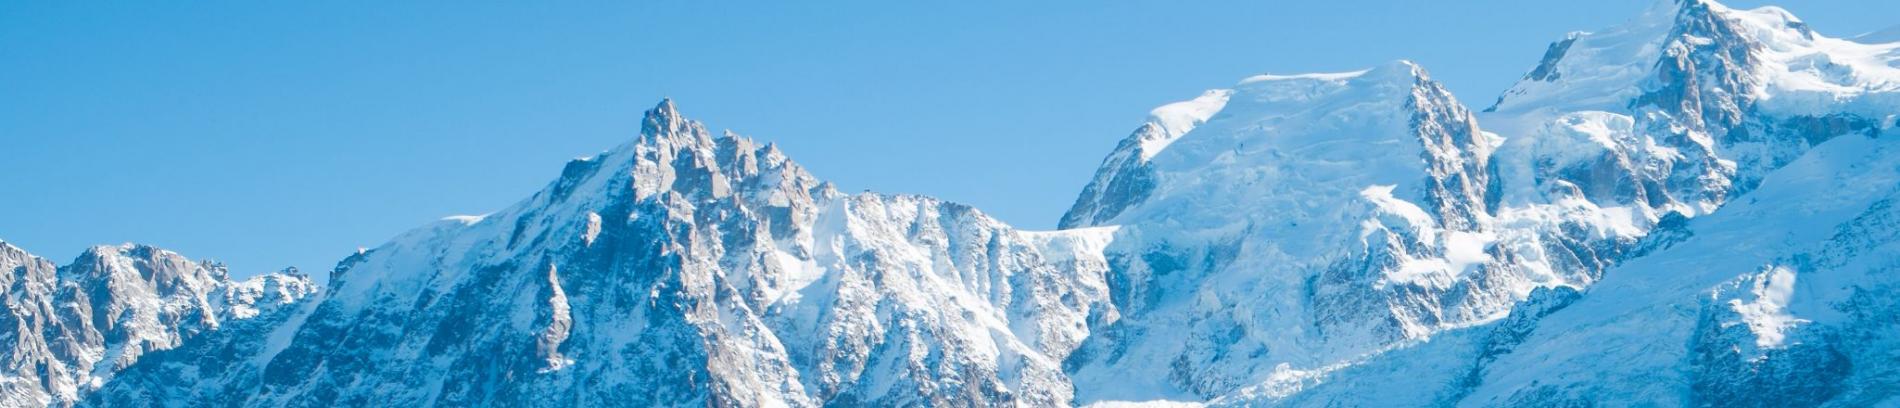 Slide Résidence Les Chalets du Mont Blanc aux Saisies - Mont Blanc